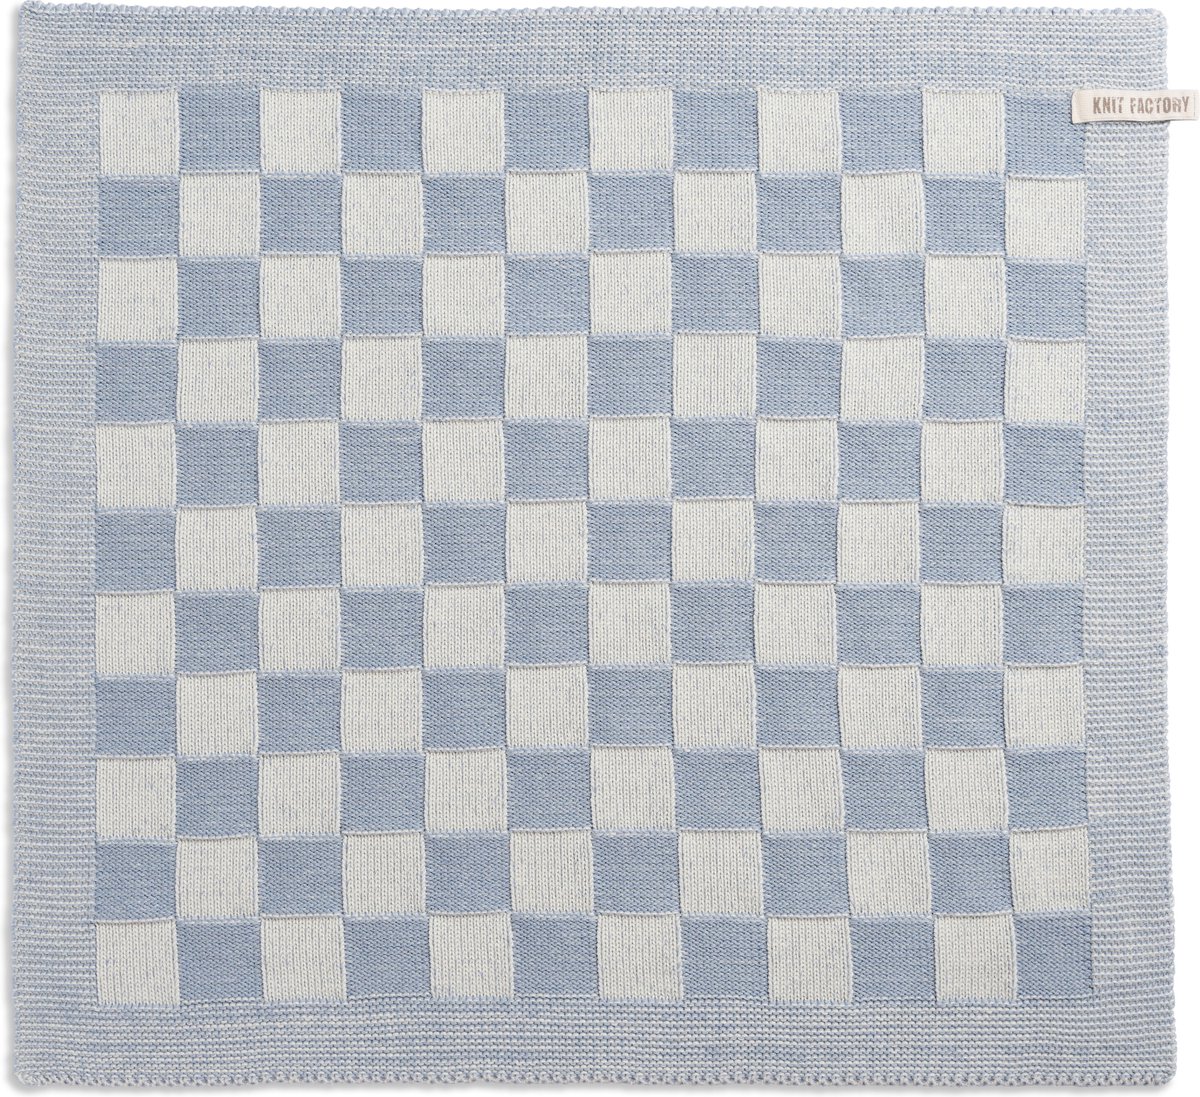 Knit Factory Gebreide Keukendoek - Keukenhanddoek Block - Geblokt motief - Handdoek - Vaatdoek - Keuken doek - Ecru/Licht Grijs - Traditionele look - 50x50 cm